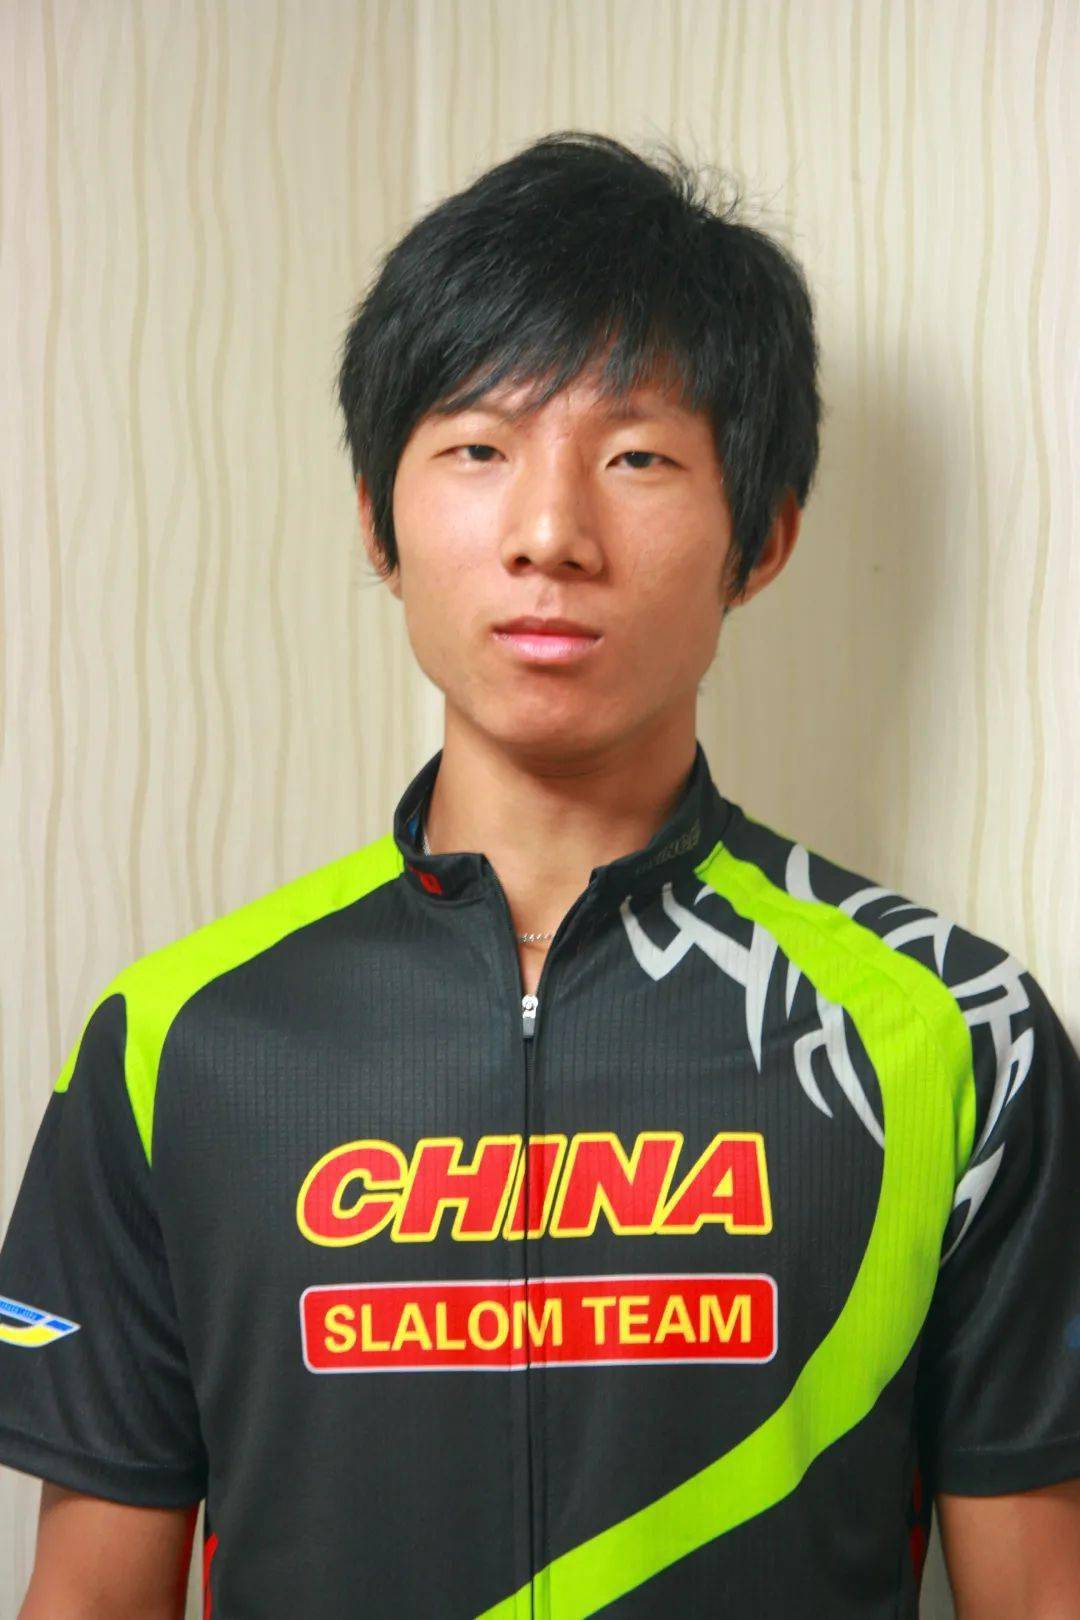 李金喜青女 速度过桩 冠军2009世界自由式轮滑锦标赛(中国,上海)邓羚